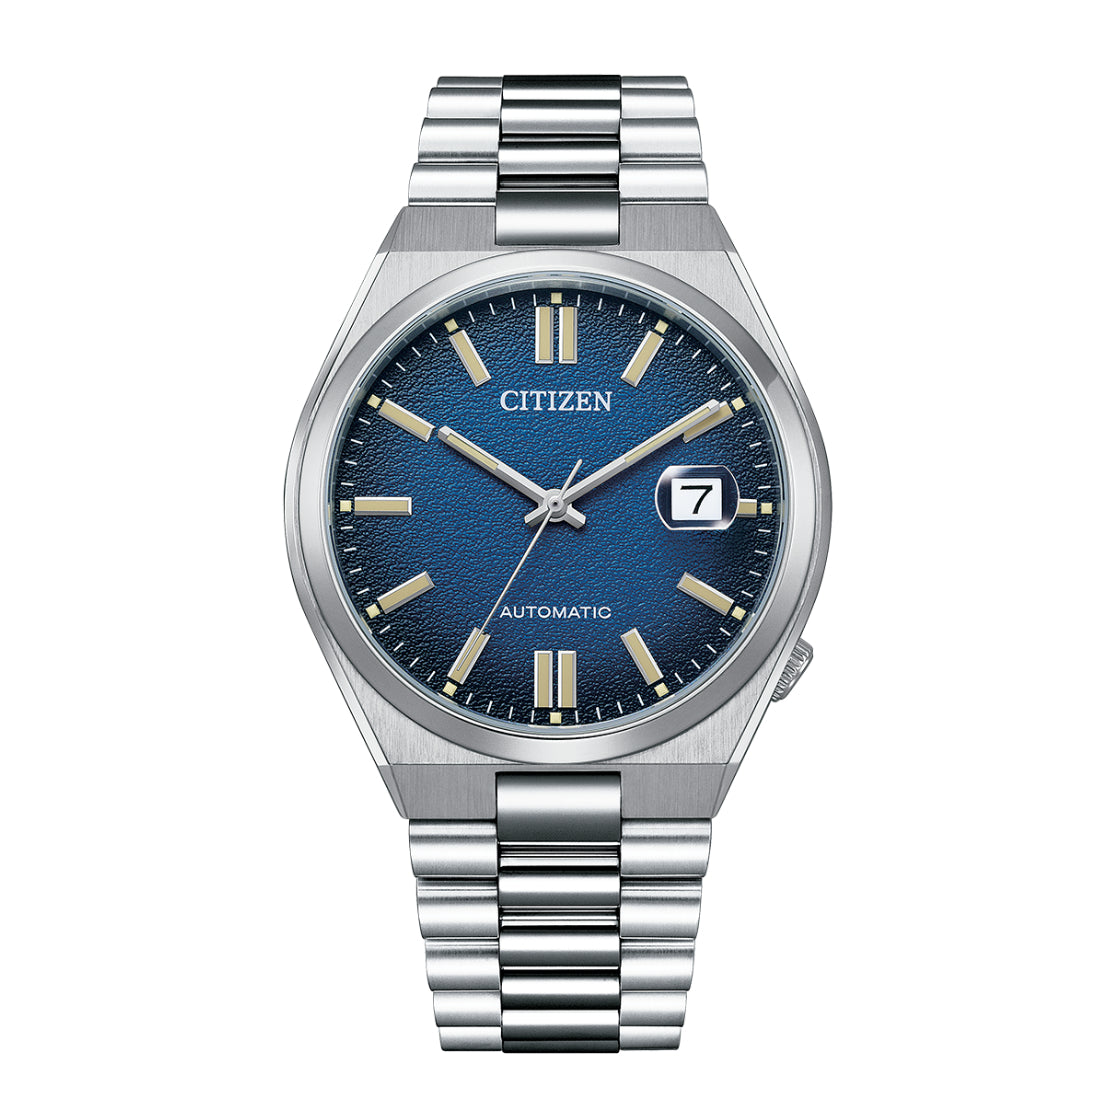 Citizen Men's Automatic Blue Dial Watch - NJ0151-88L